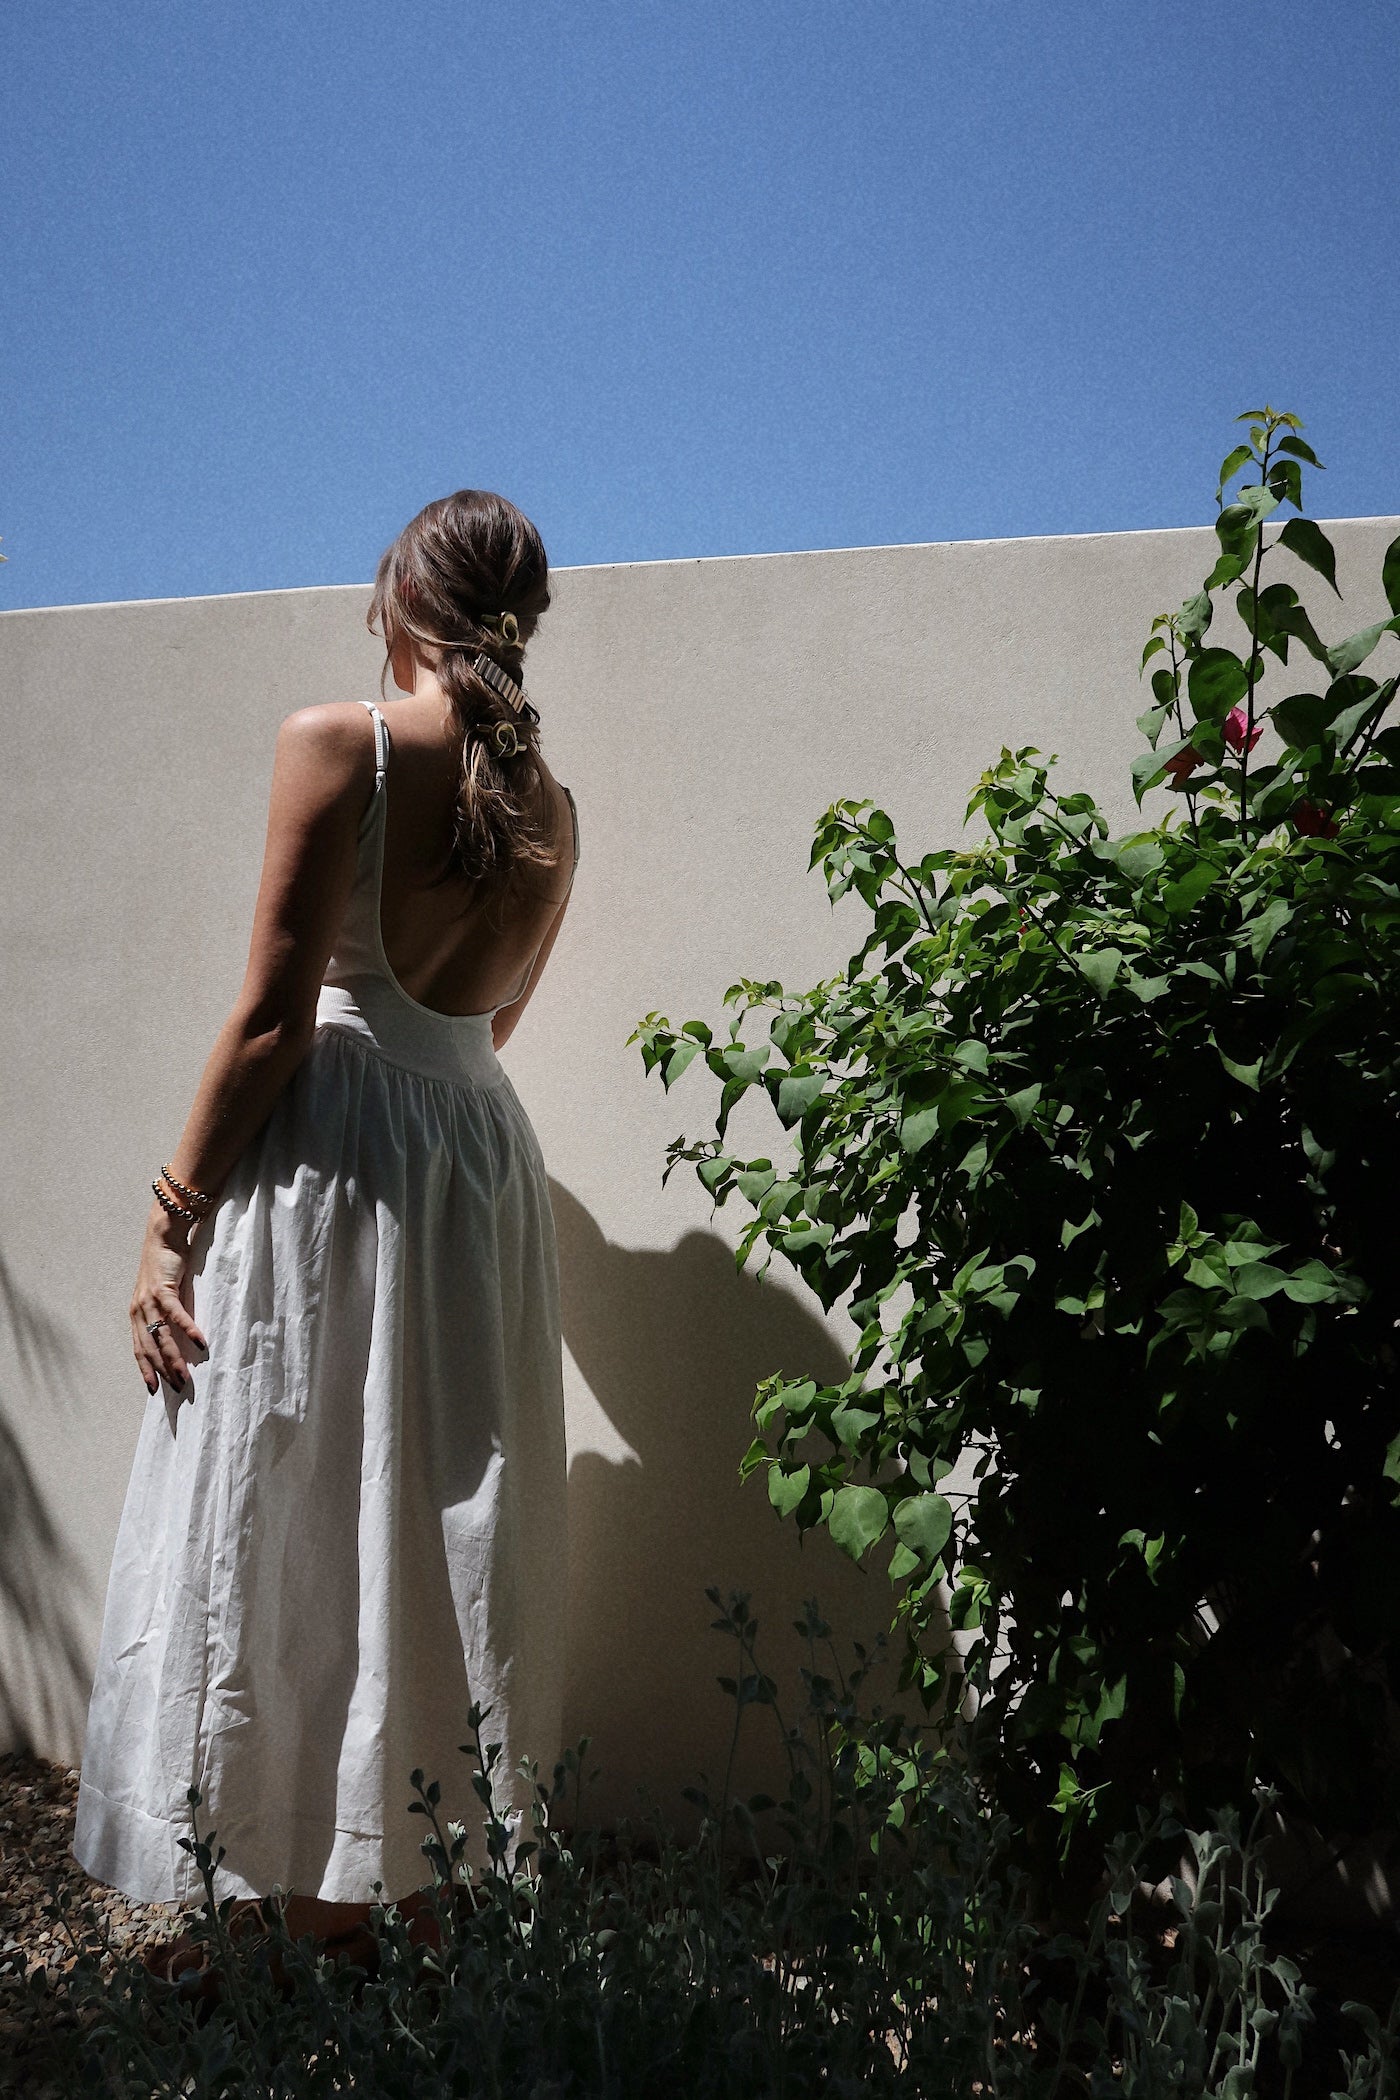 Cassandra Maxi Dress - White